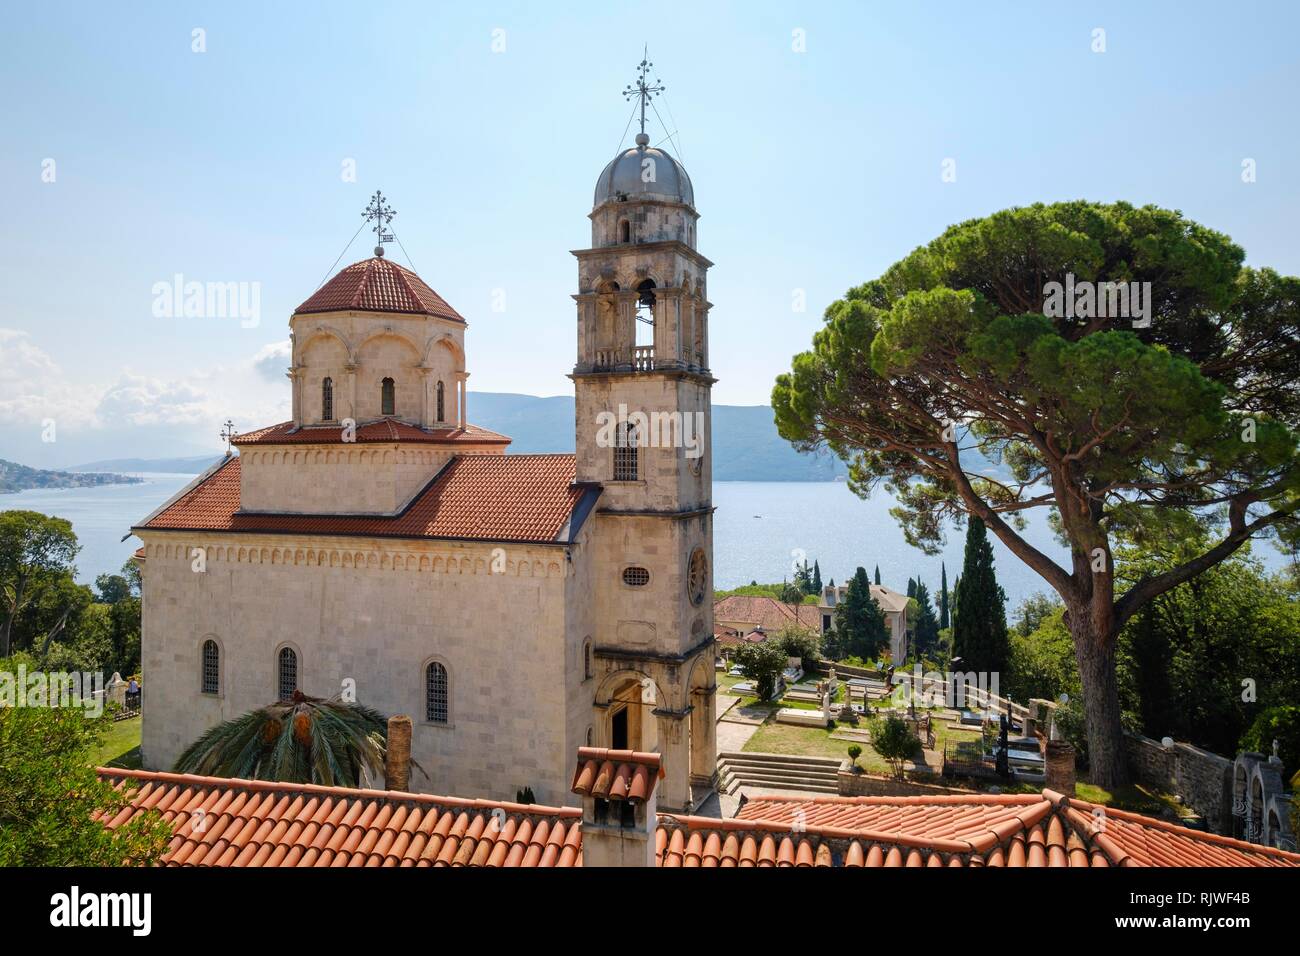 Le monastère de savina, Herceg Novi, dans la baie de Kotor, Monténégro Banque D'Images